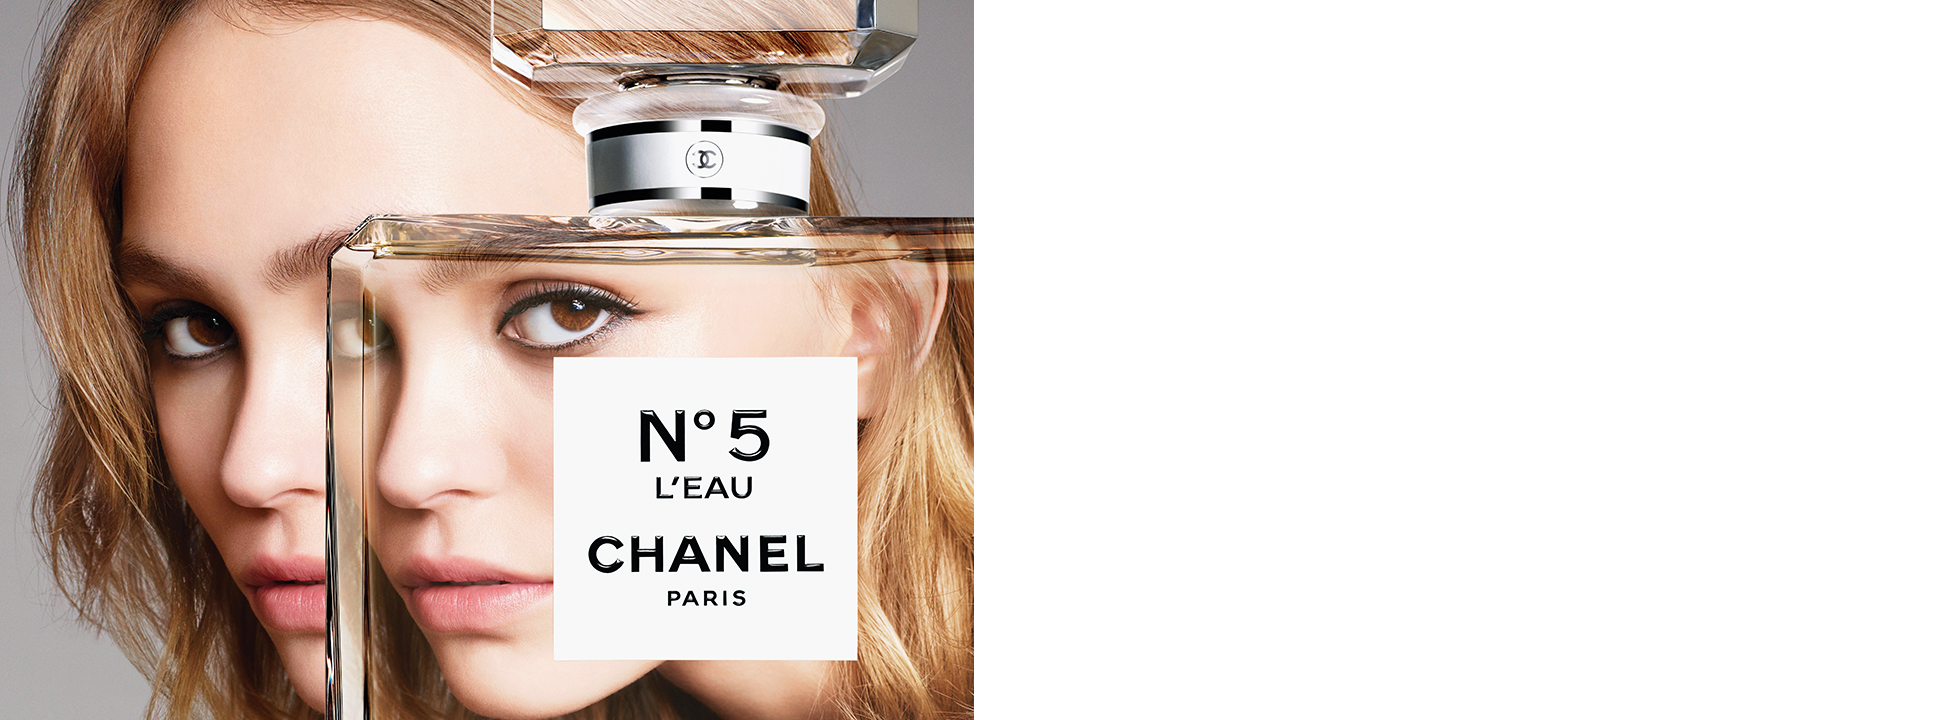 Chanel Fragrances & No.5 L’Eau